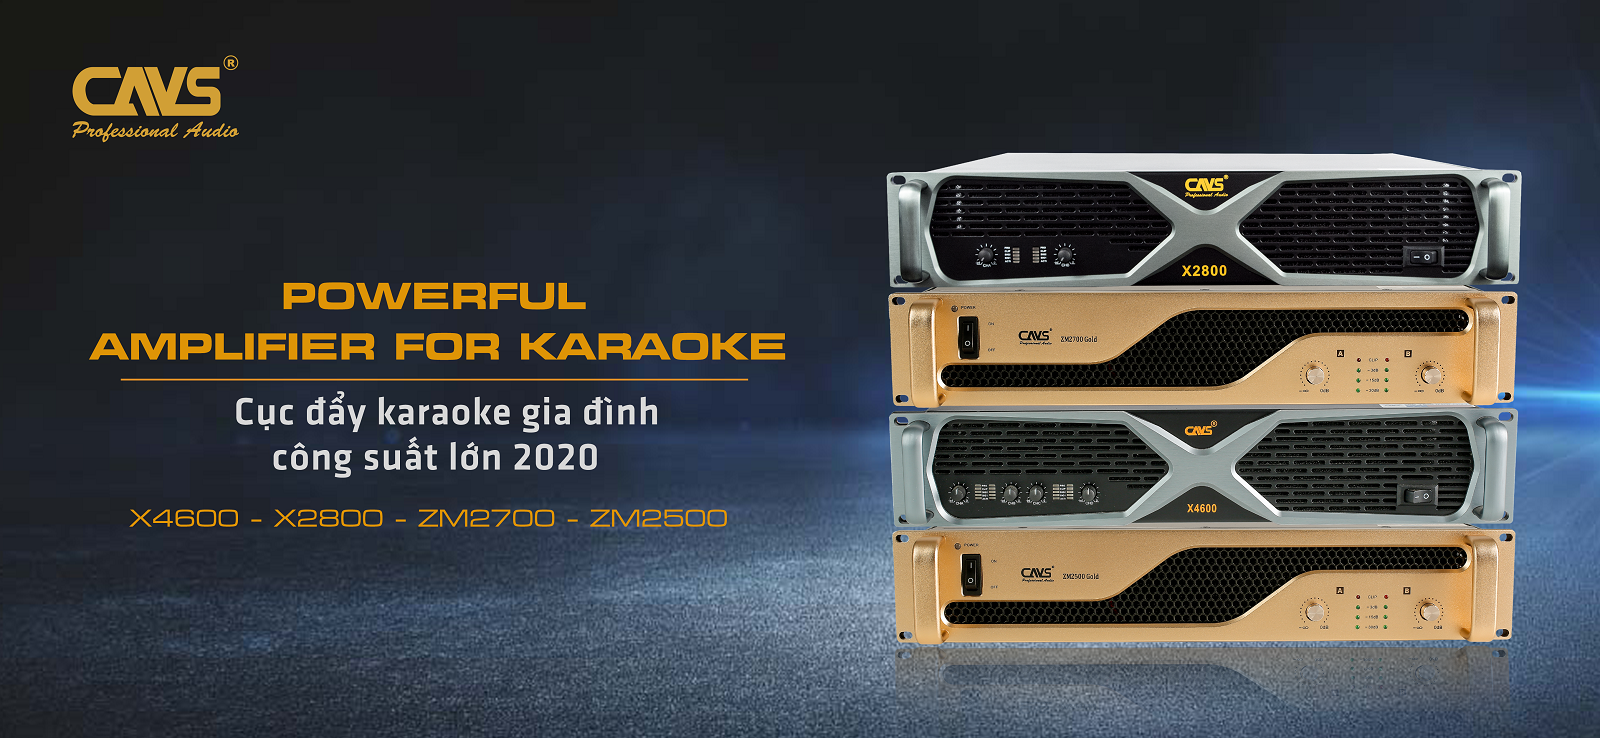 Top 5 Cục đẩy hát Karaoke hay nhất 2021 - CAVS X2800 và X4800